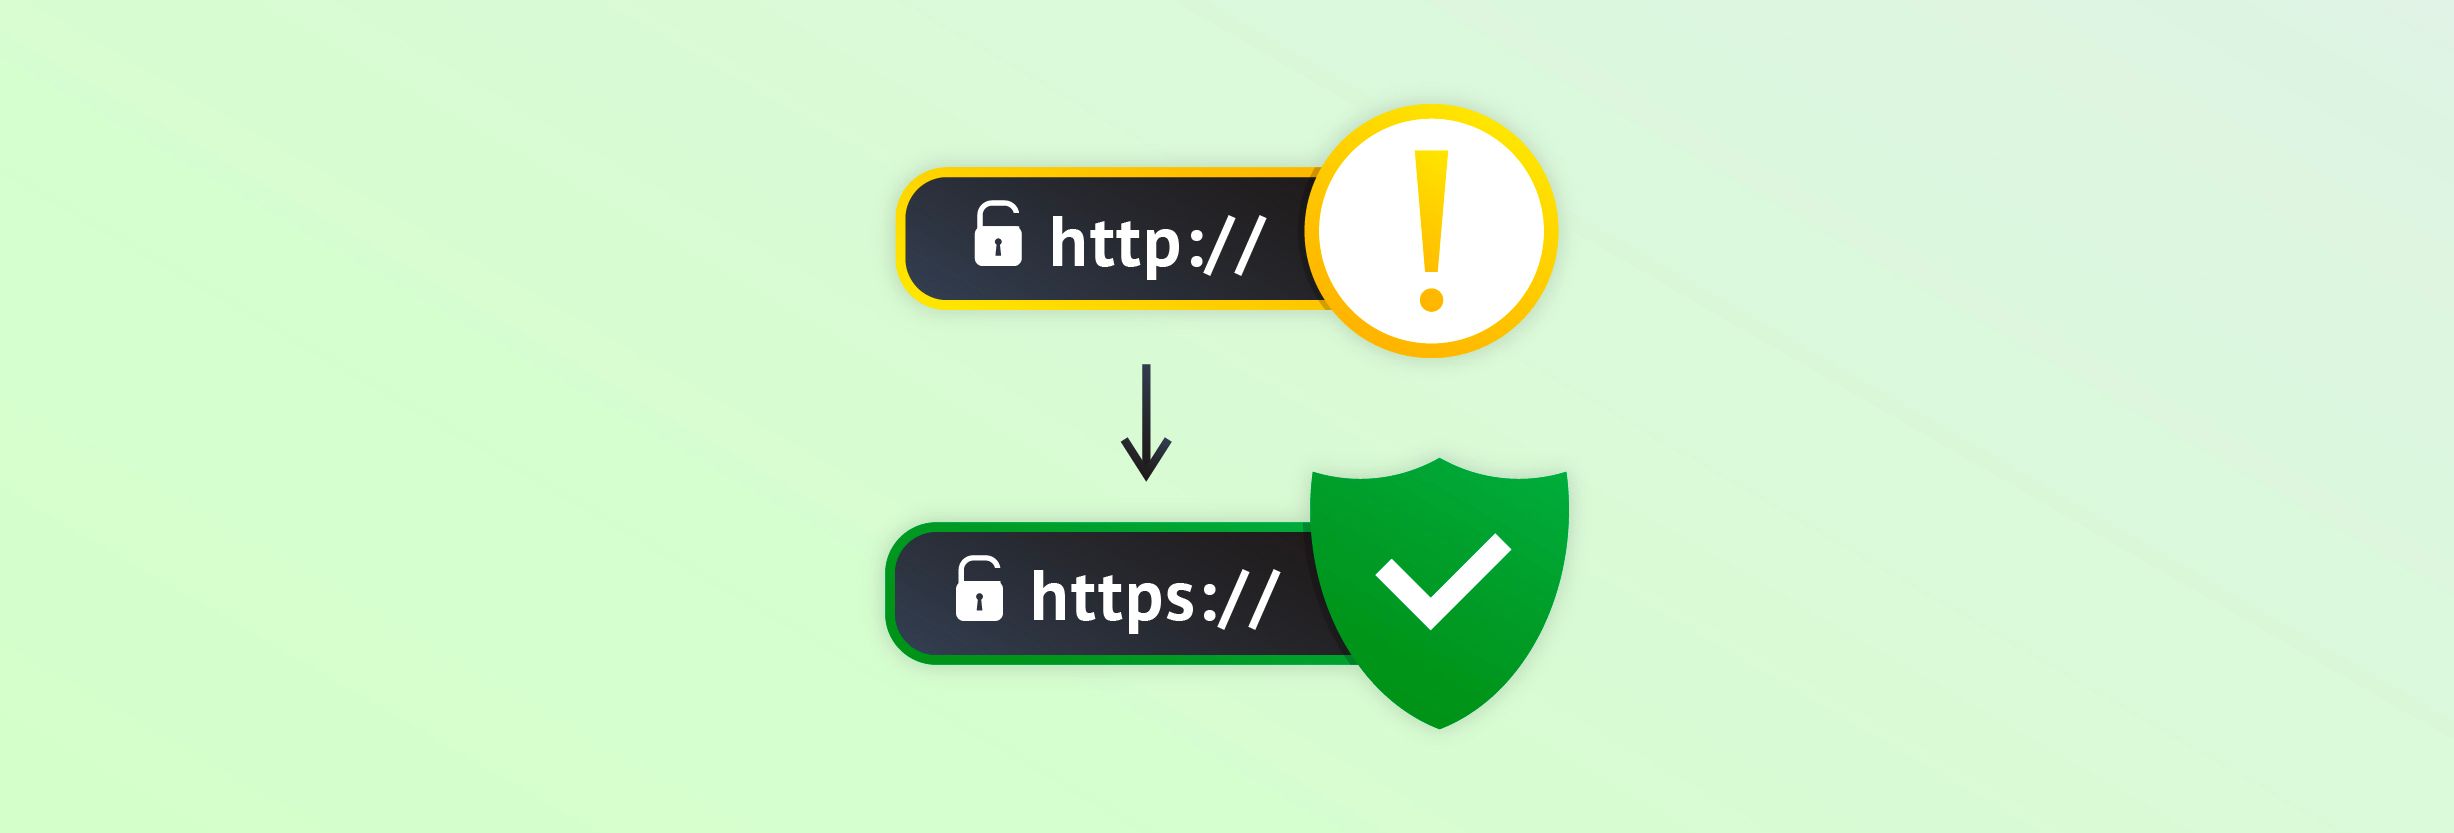 Перехід на https. Як перевести сайт на захищений протокол?